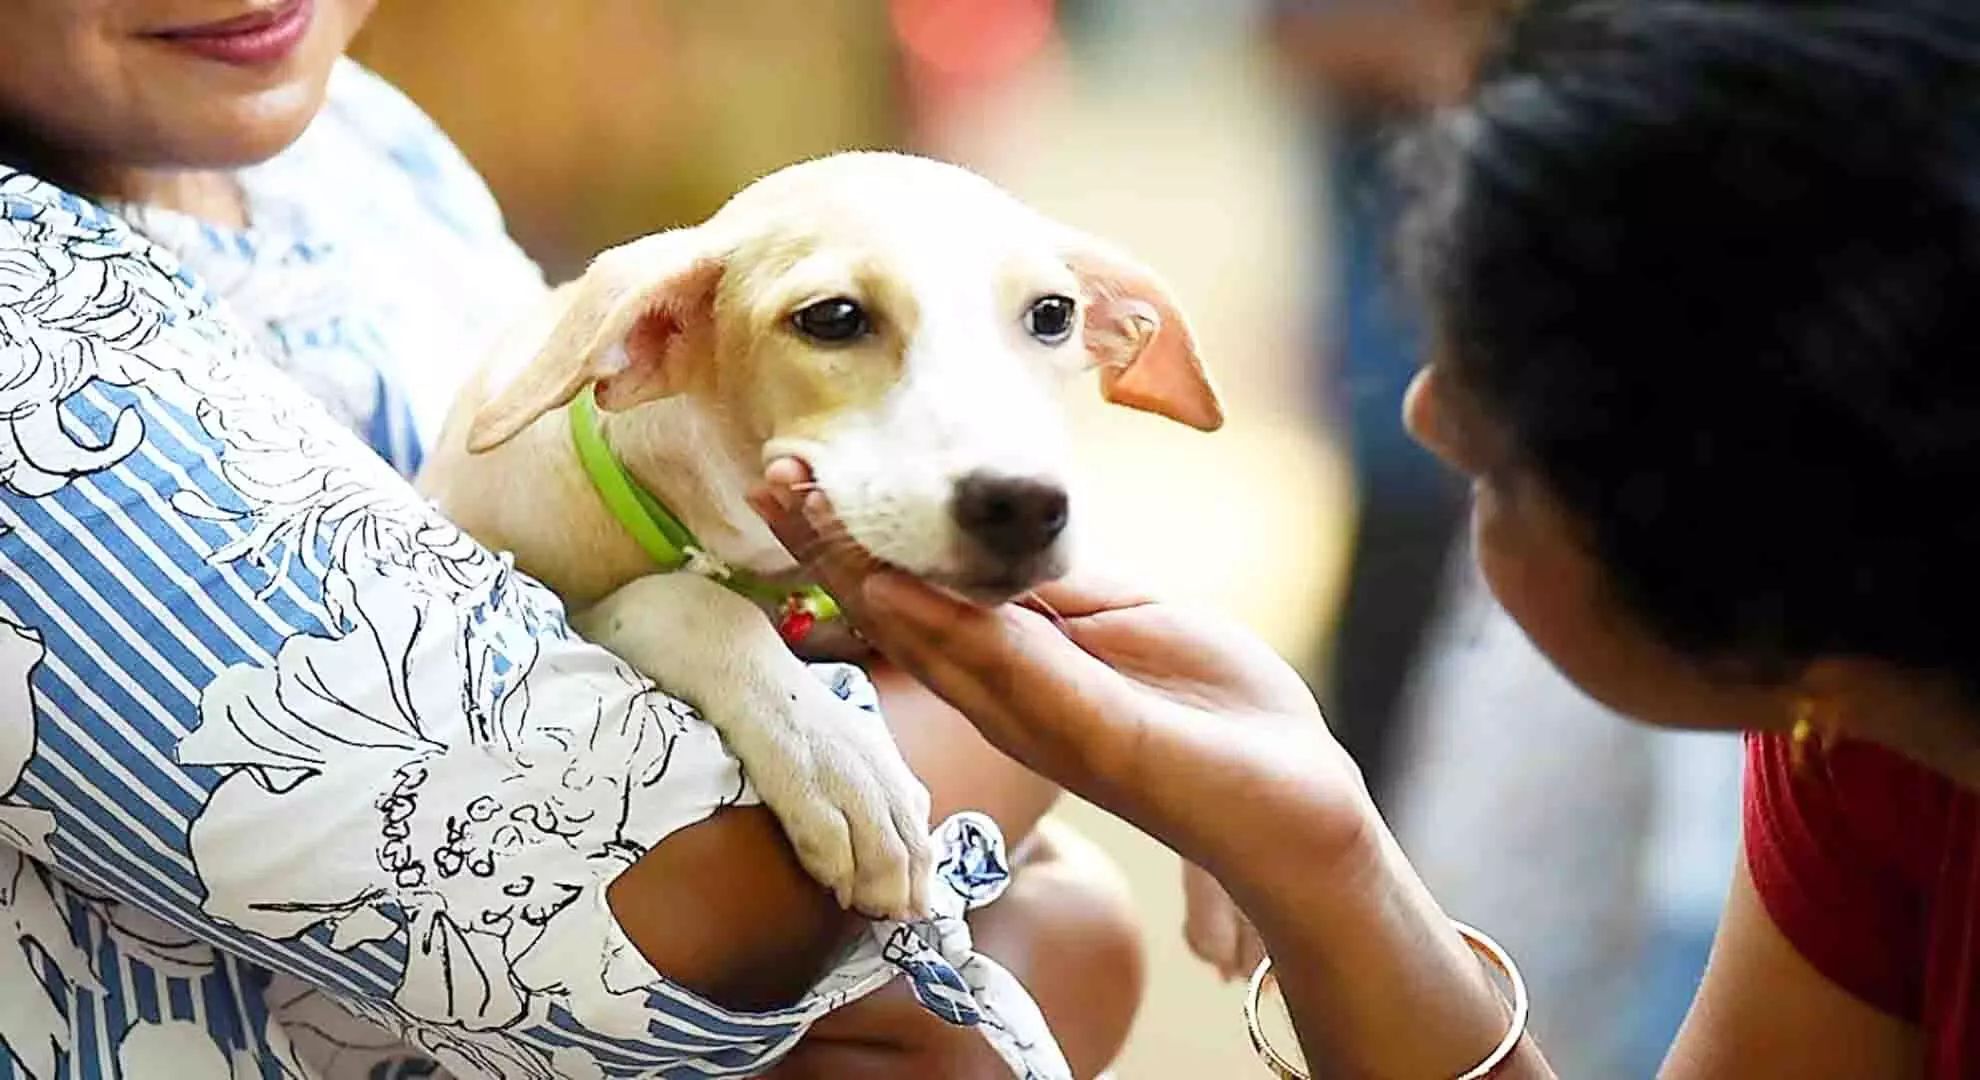 चेन्नई में पालतू कुत्तों के ऑनलाइन पंजीकरण को बढ़ावा देने के लिए घर-घर जाकर अभियान चलाया जा रहा